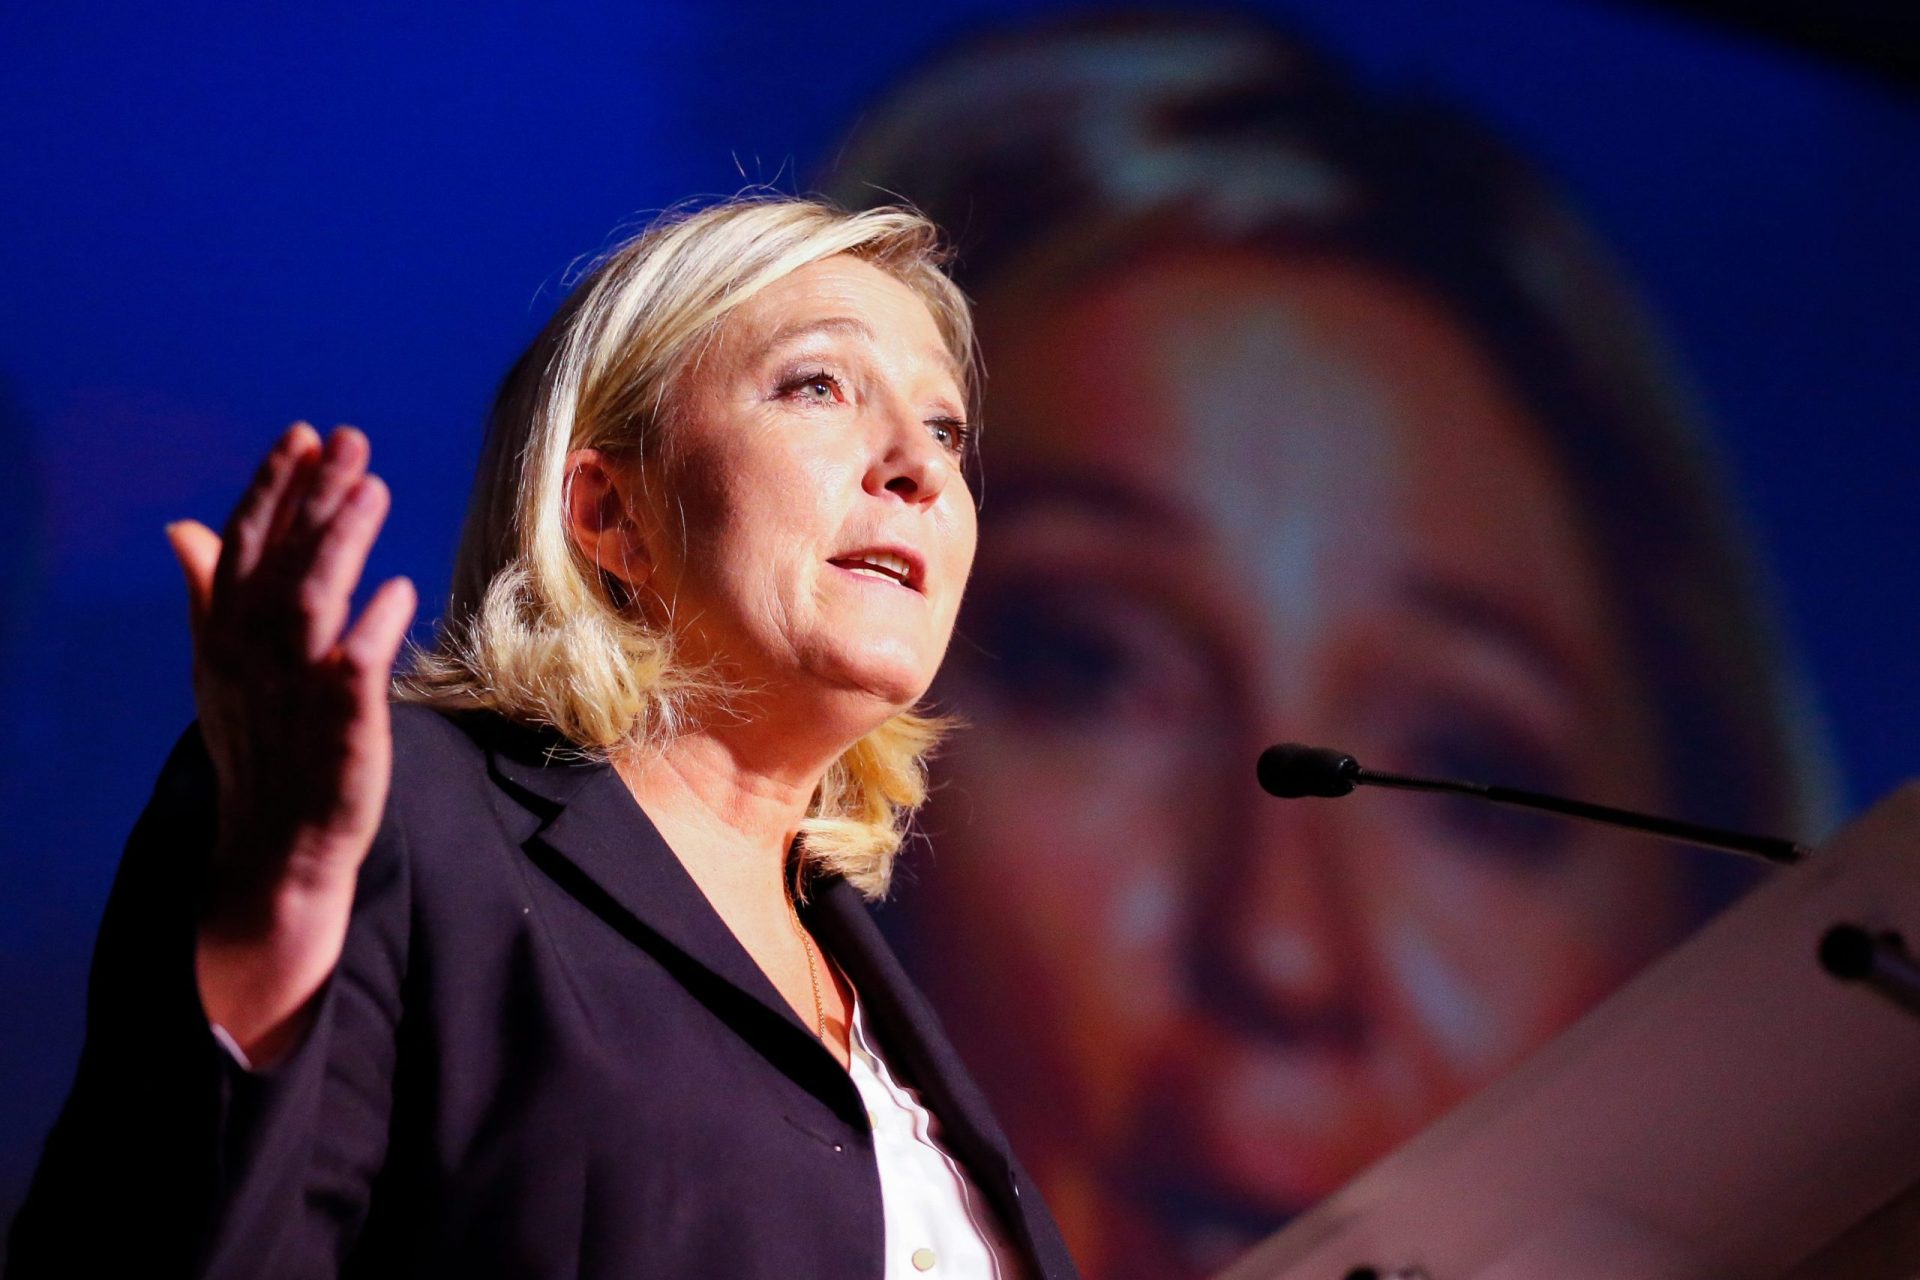 Marine Le Pen será julgada por incitamento ao ódio racial em França